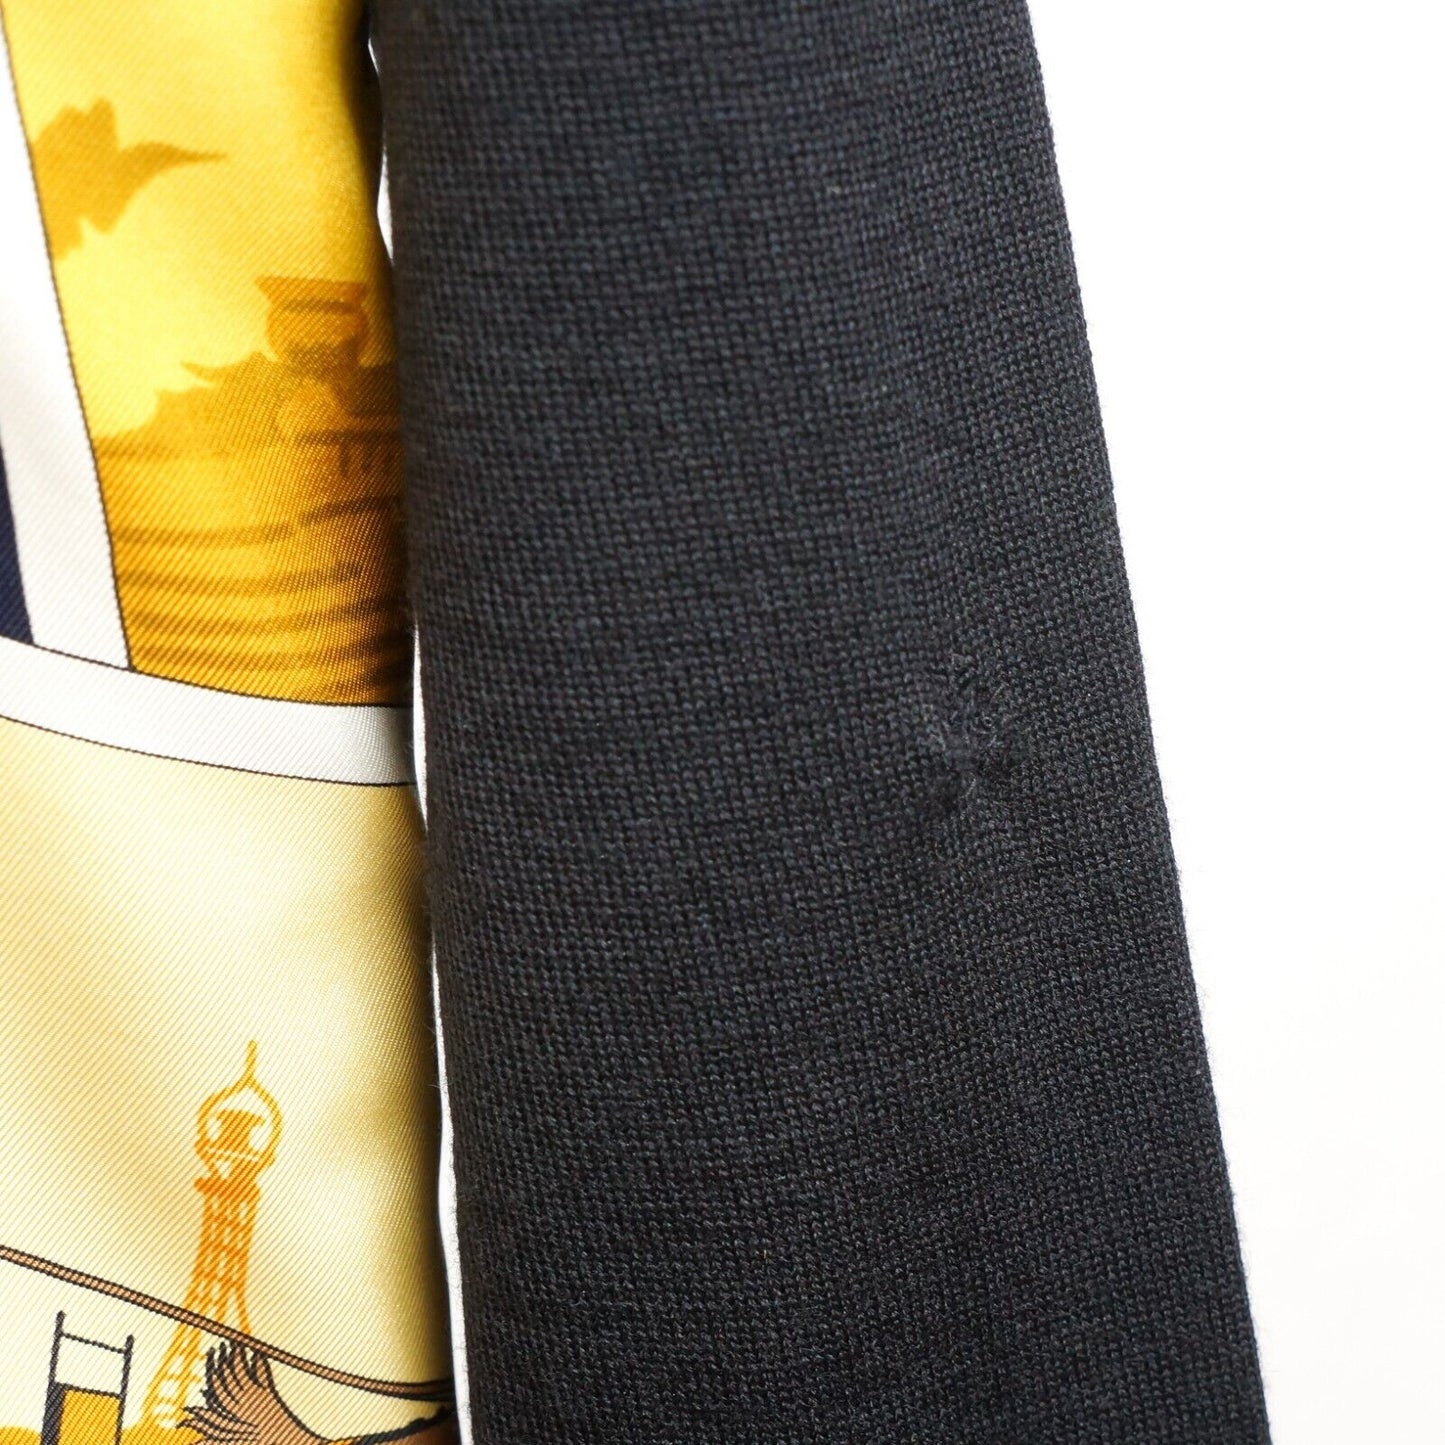 HERMES Cardigan Sweater Knitwear Silk Wool Yellow Black Women